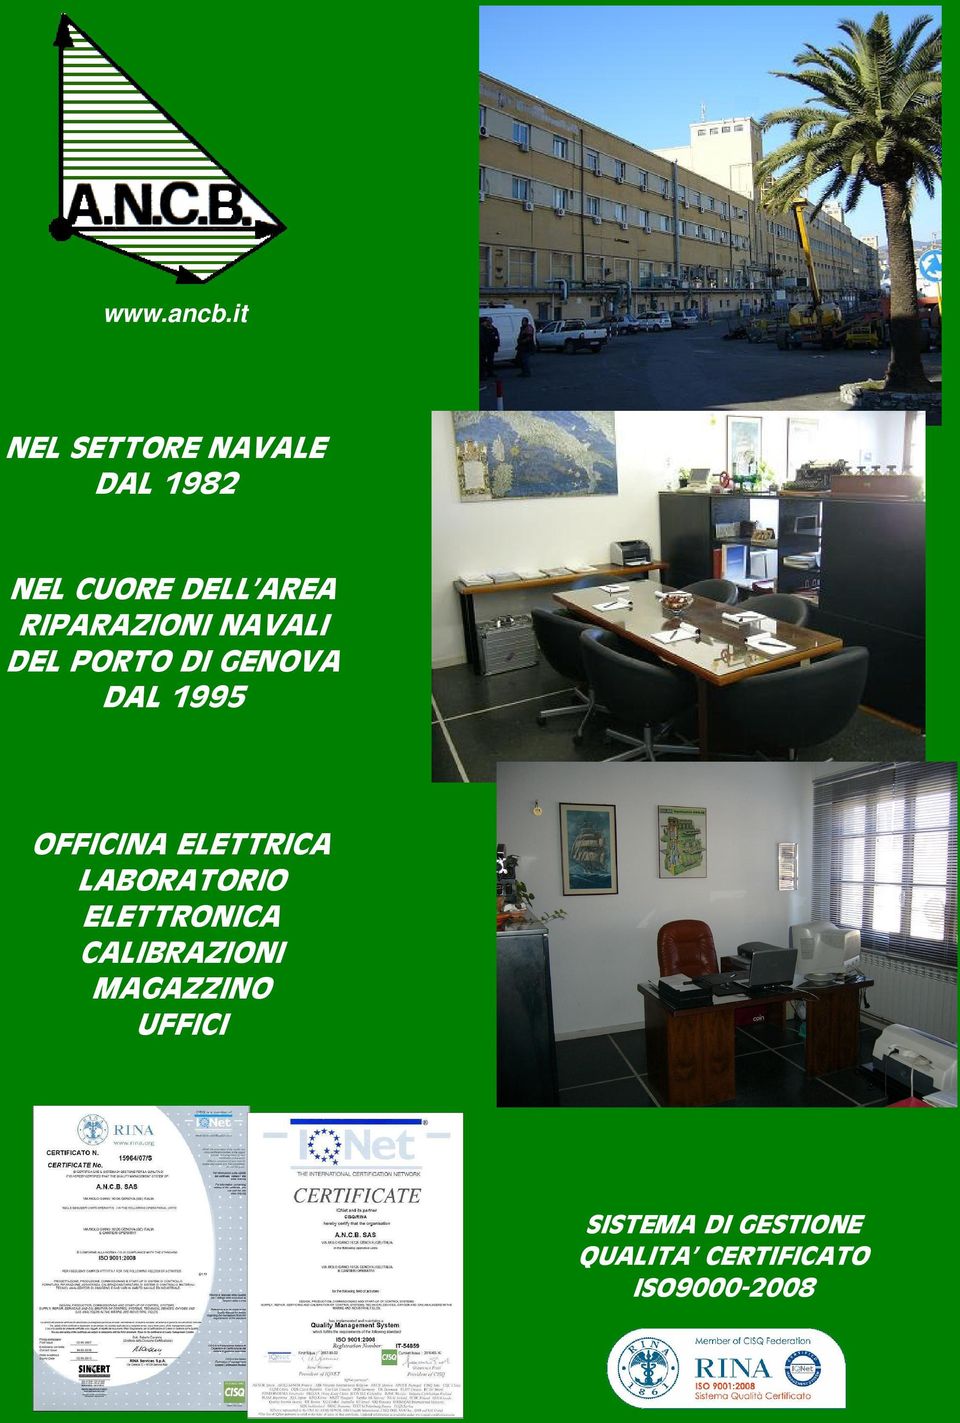 RIPARAZIONI NAVALI DEL PORTO DI GENOVA DAL 1995 OFFICINA